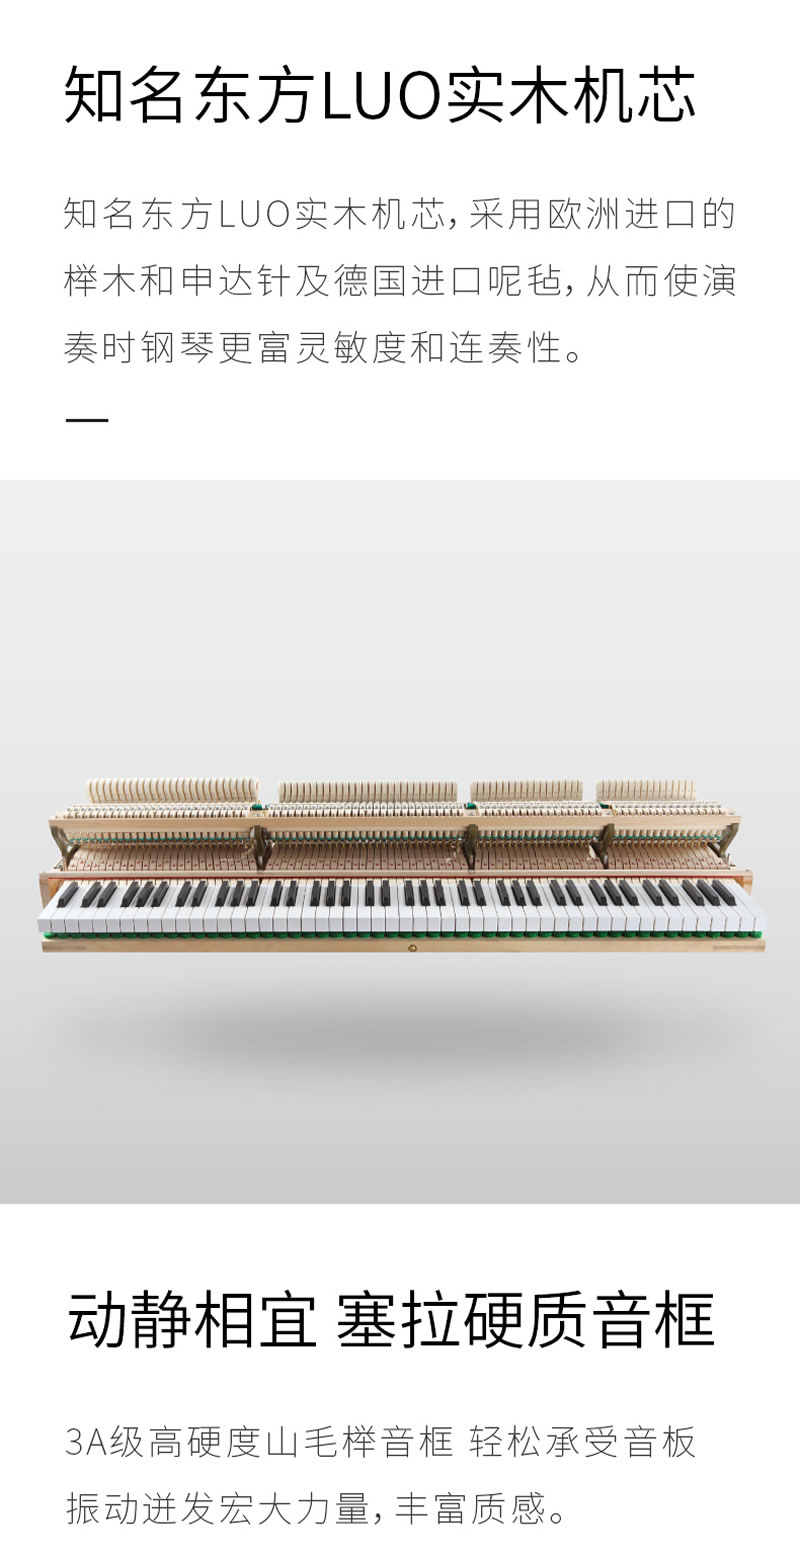 卡罗德钢琴 TG86（标准版）